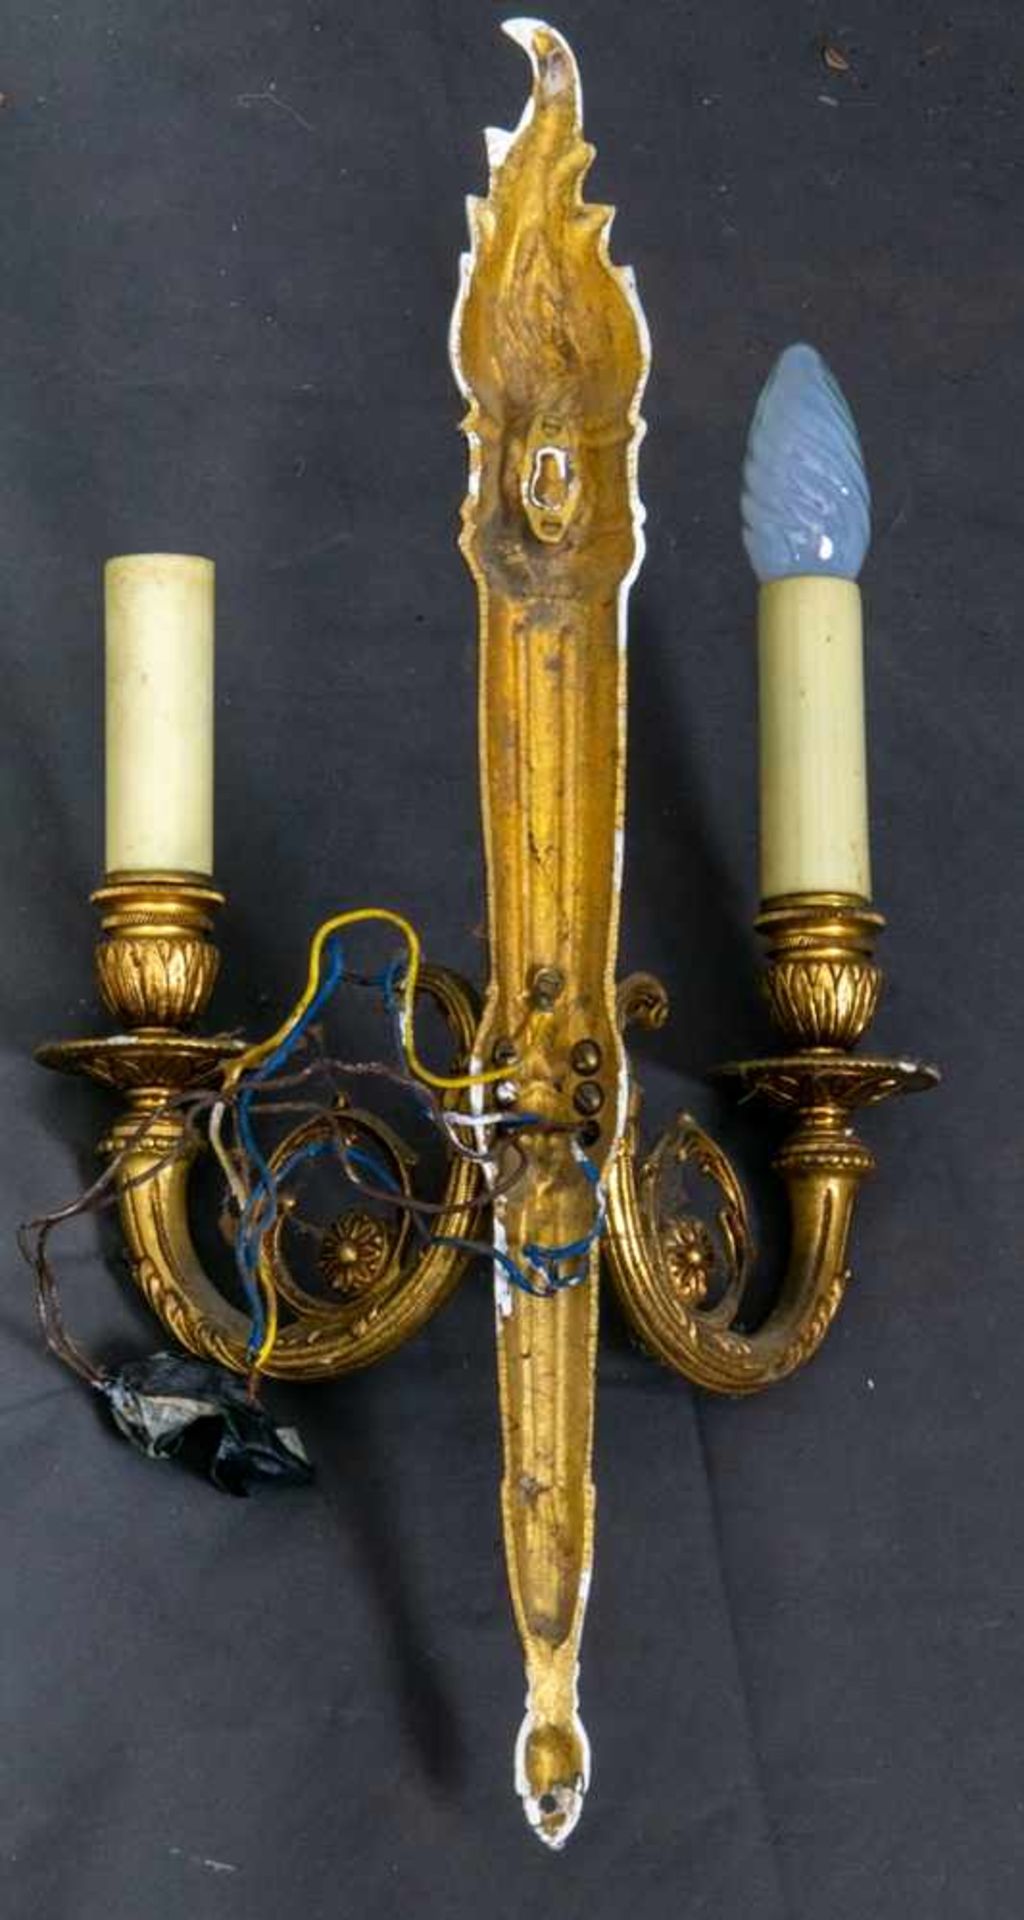 Zweiarmige Wandappliken, Louis XVI-Stil, Messingguss, Elektrifizierung ungeprüft, Höhe ca. 45 cm.- - - Bild 7 aus 7